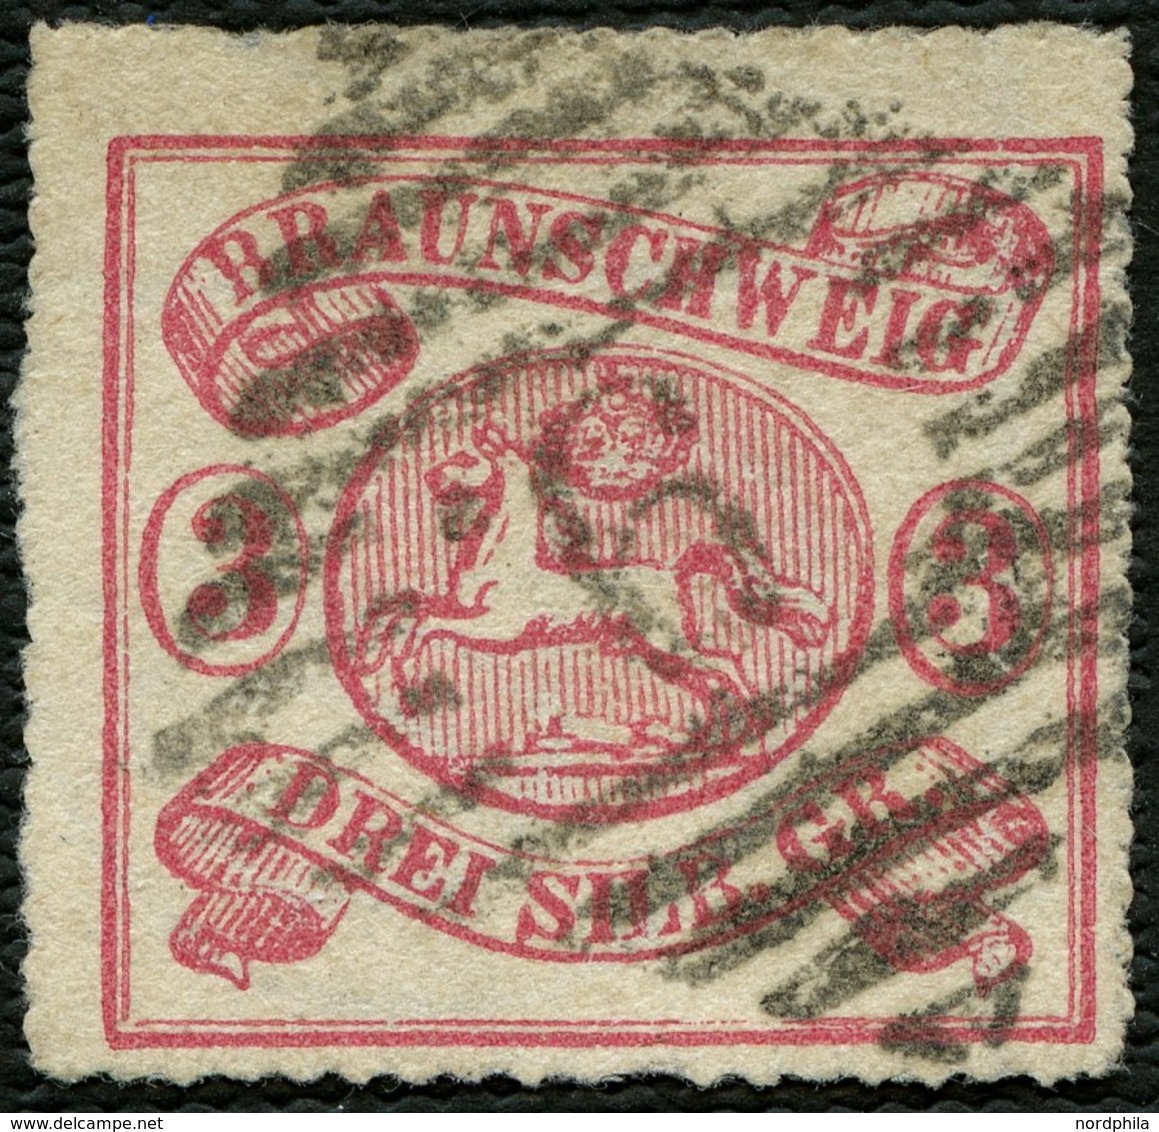 BRAUNSCHWEIG 16 O, 1864, 3 Sgr. Lilarot, Nummernstempel 9, Farbfrisches Kabinettstück, Fotoattest Lange, Mi. (650.-) - Braunschweig